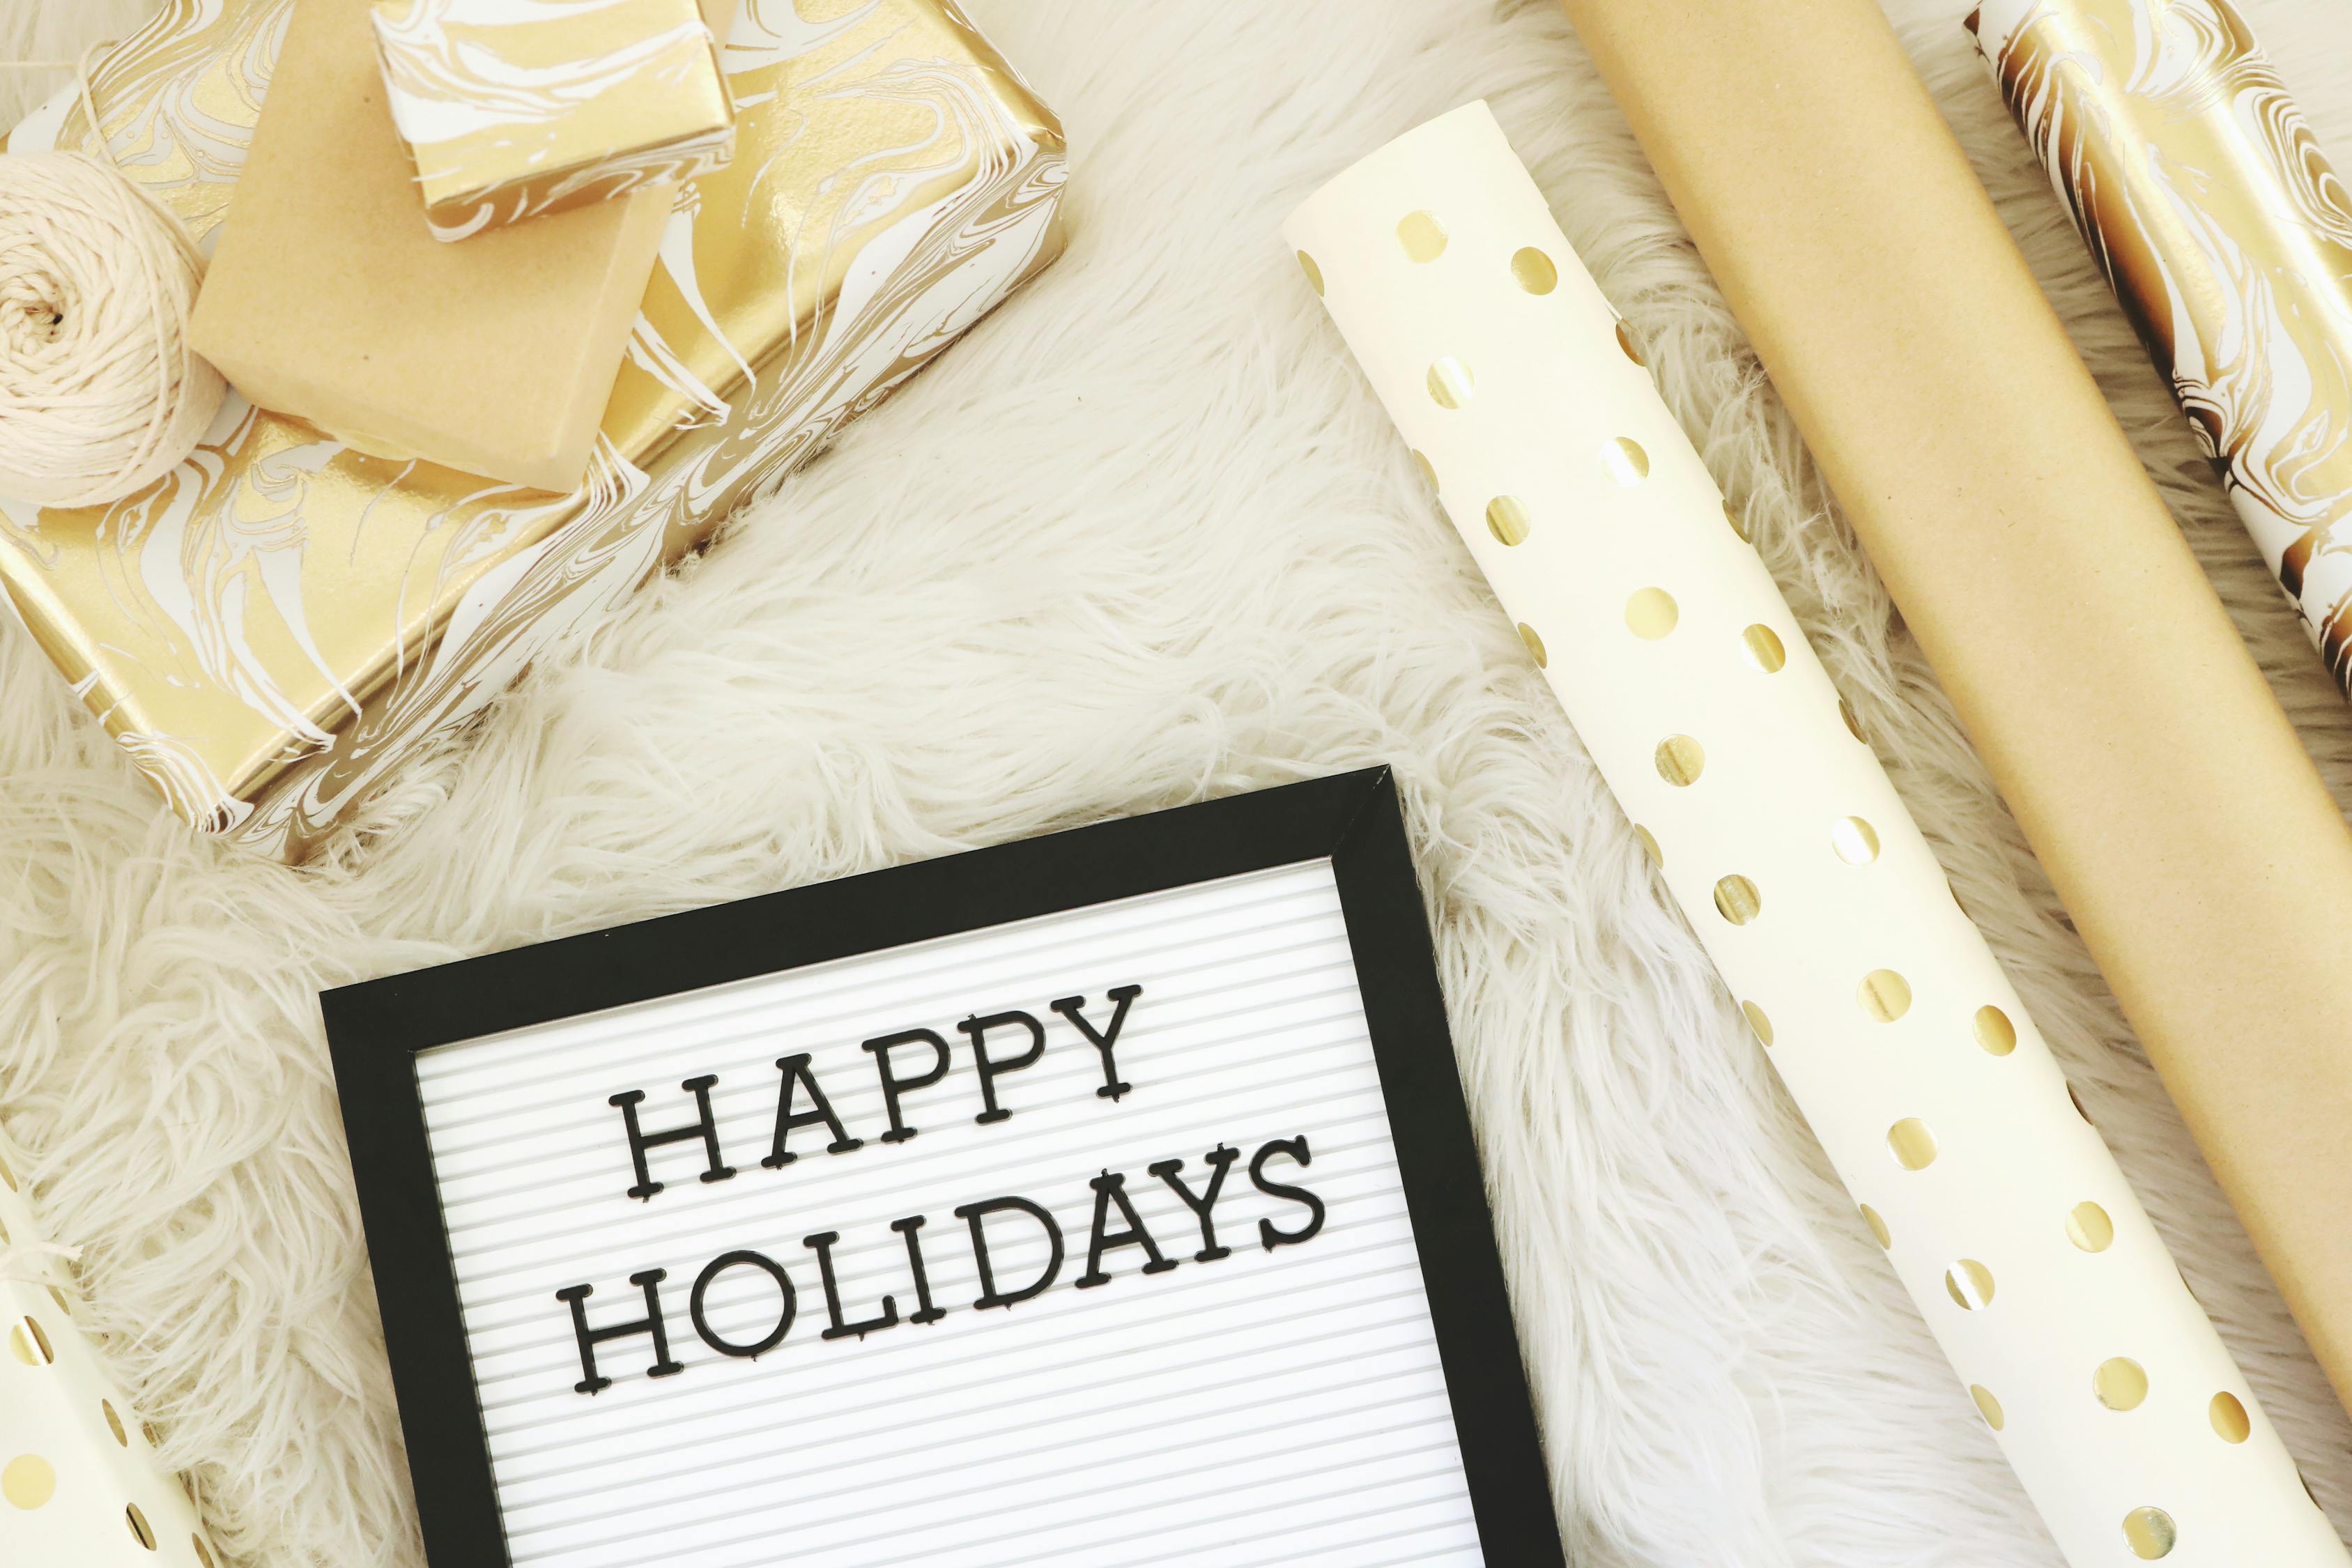 Happy Holidays Text · Free Stock Photo